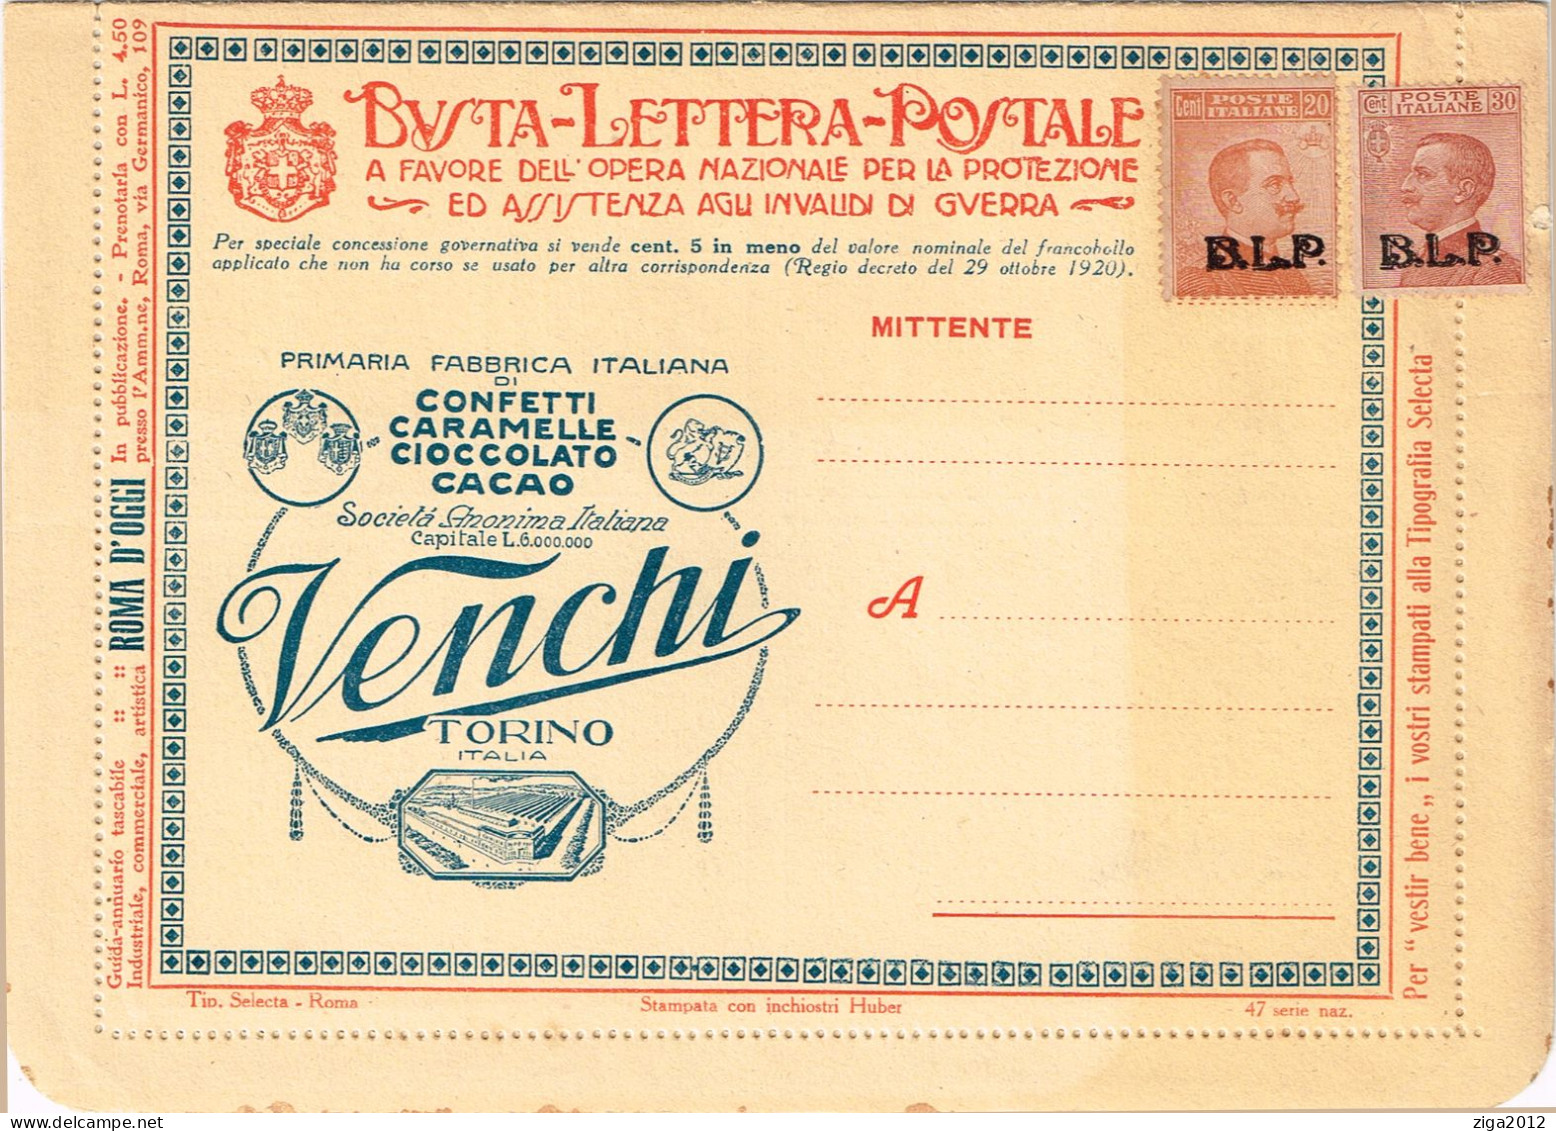 ITALY 1923 B.L.P. BUSTA LETTERA POSTALE CON C.20 III° TIPO + C.30 III° TIPO NUOVA E COMPLETA - Pubblicitari